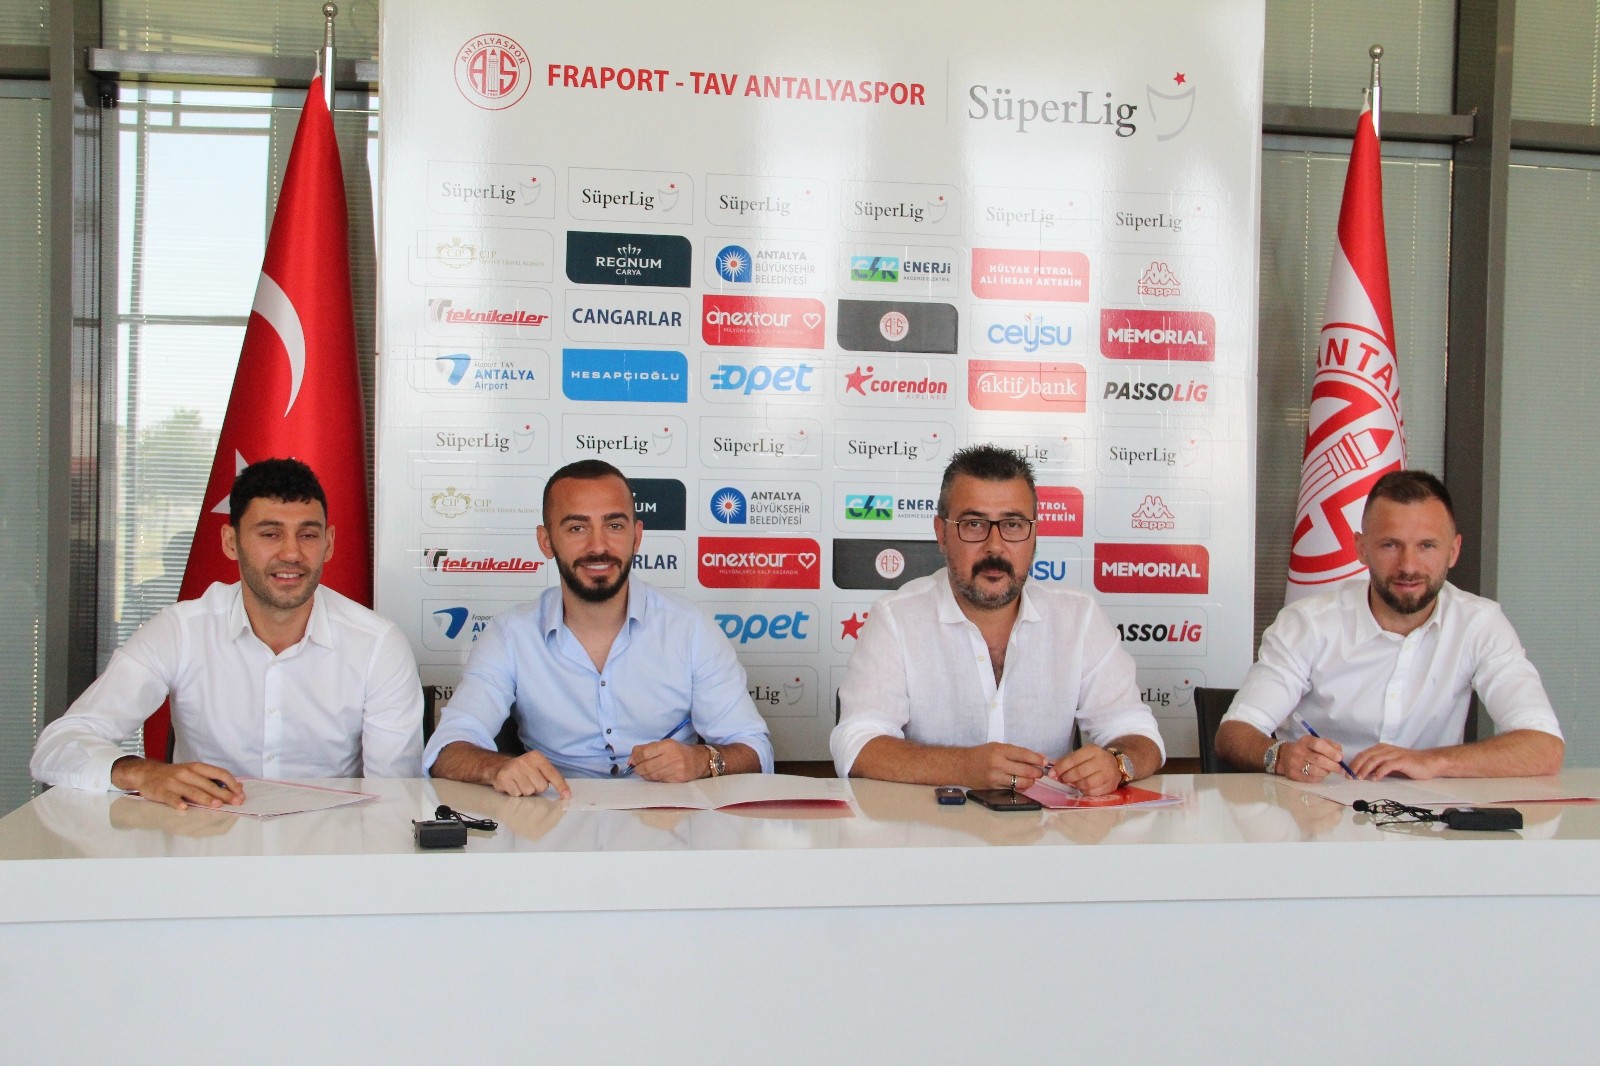  FT Antalyaspor, Veysel Sarı, Eren Albayrak ve Hakan Özmert’in sözleşmelerini uzattı.